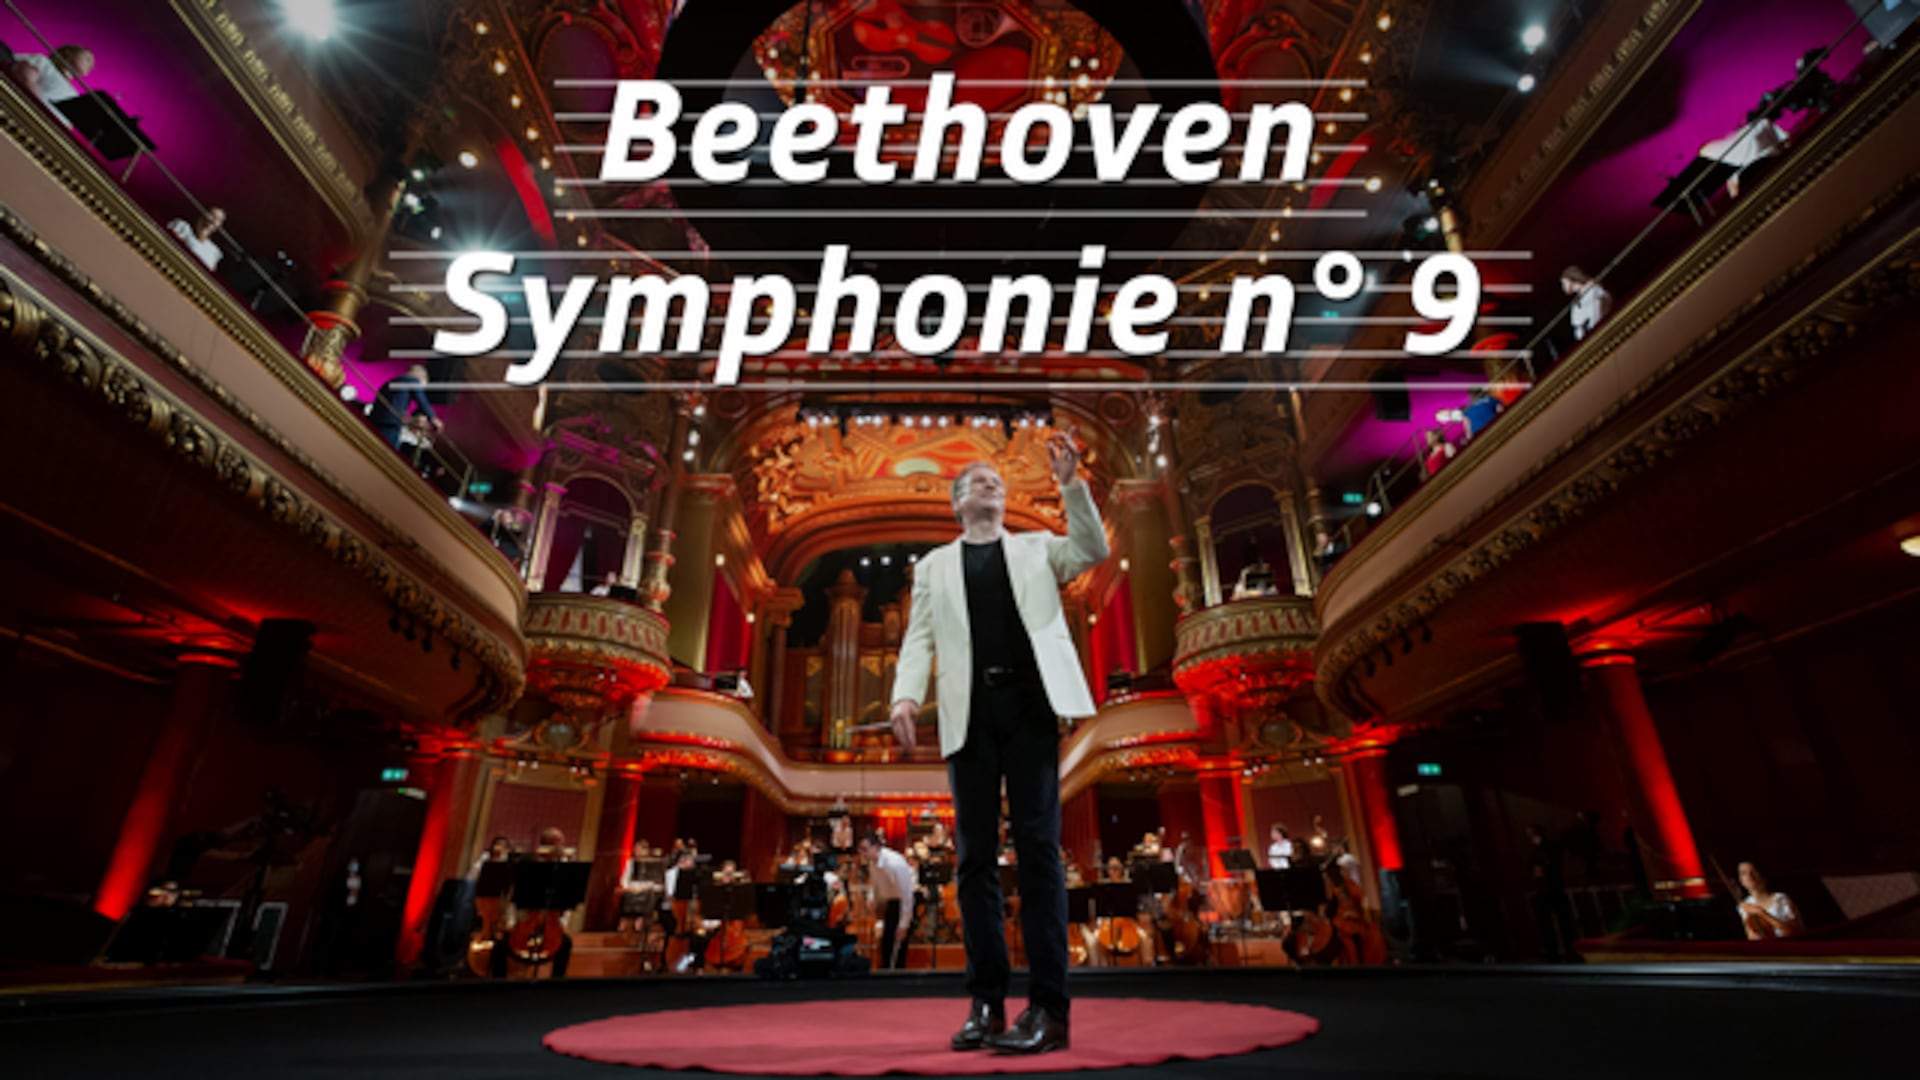 Beethoven - Symphonie n° 9